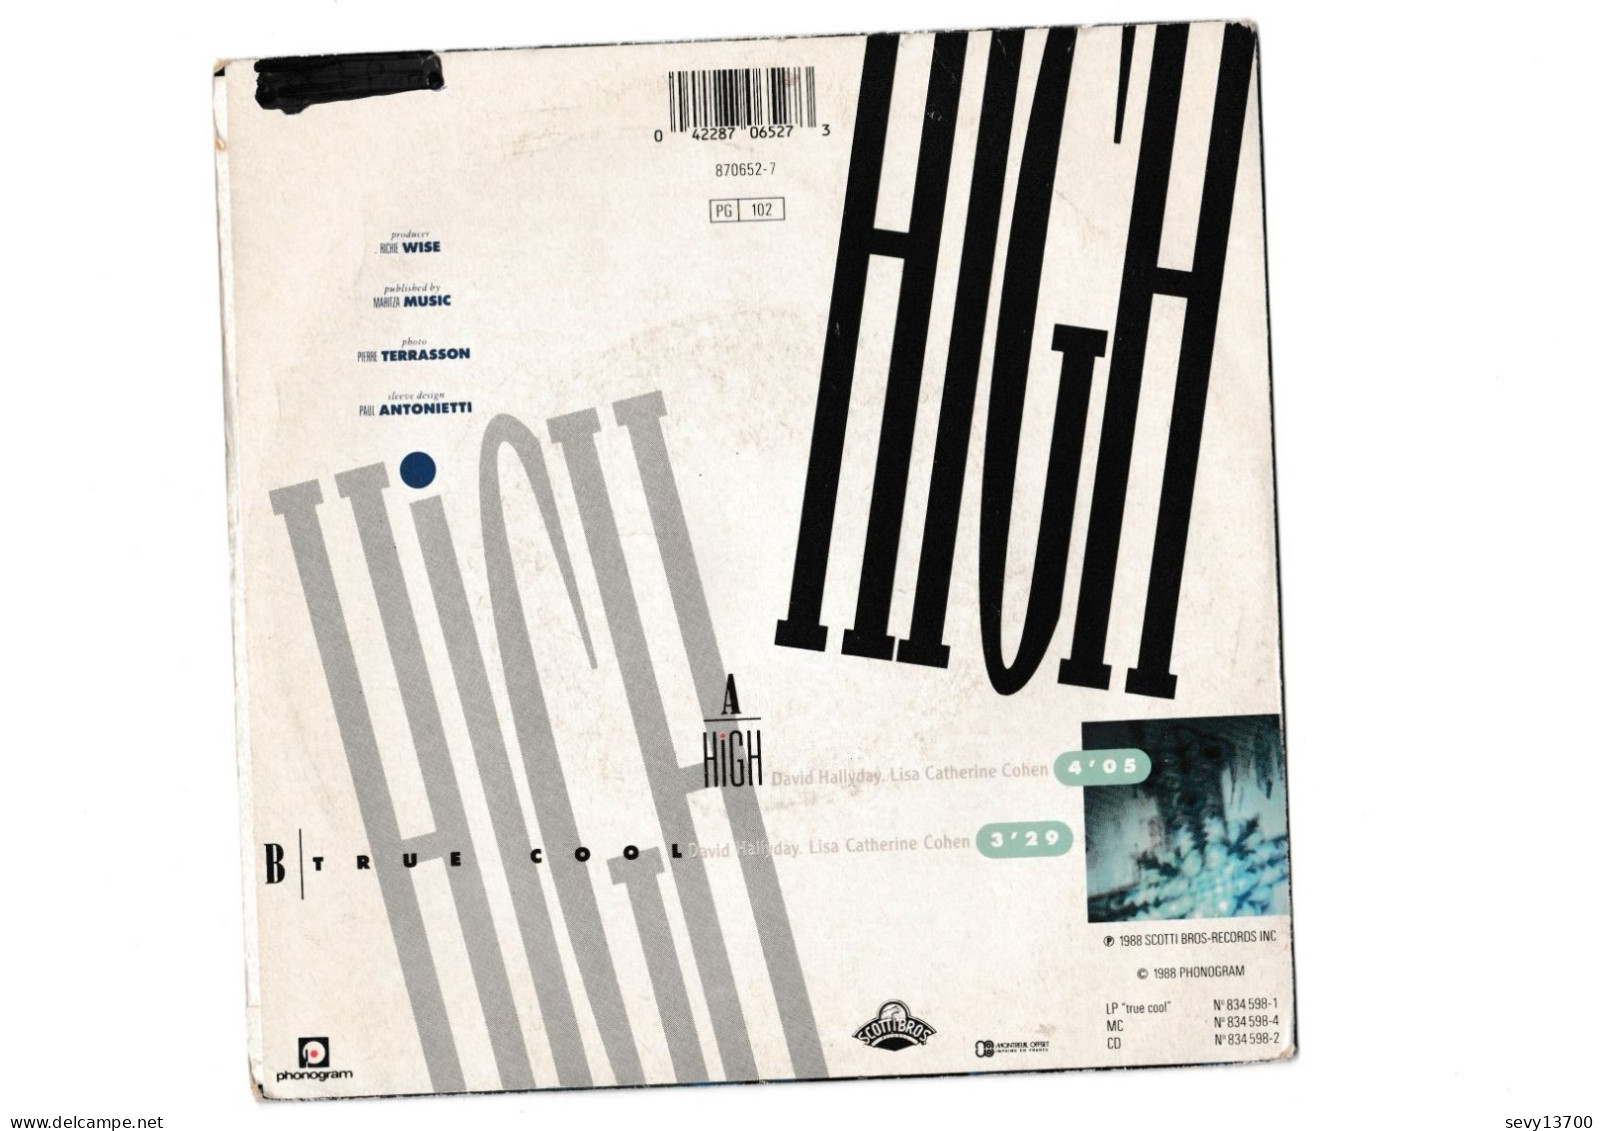 Vinyles 45 Tours David Hallyday - High - Année 1988 - Otros - Canción Francesa